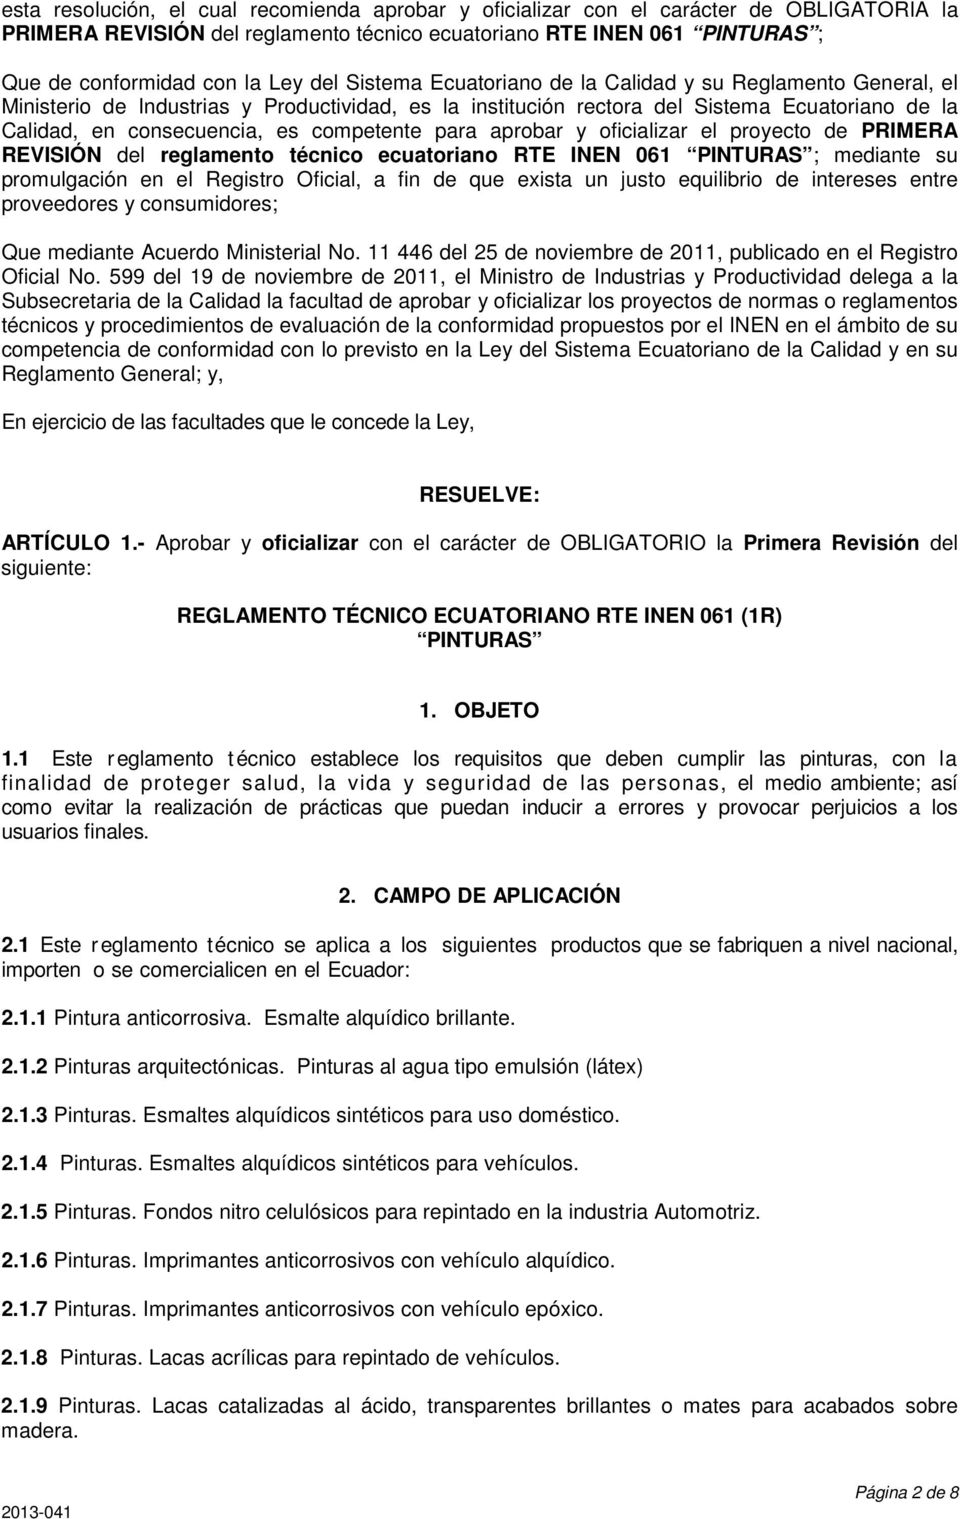 competente para aprobar y oficializar el proyecto de PRIMERA REVISIÓN del reglamento técnico ecuatoriano RTE INEN 061 PINTURAS ; mediante su promulgación en el Registro Oficial, a fin de que exista